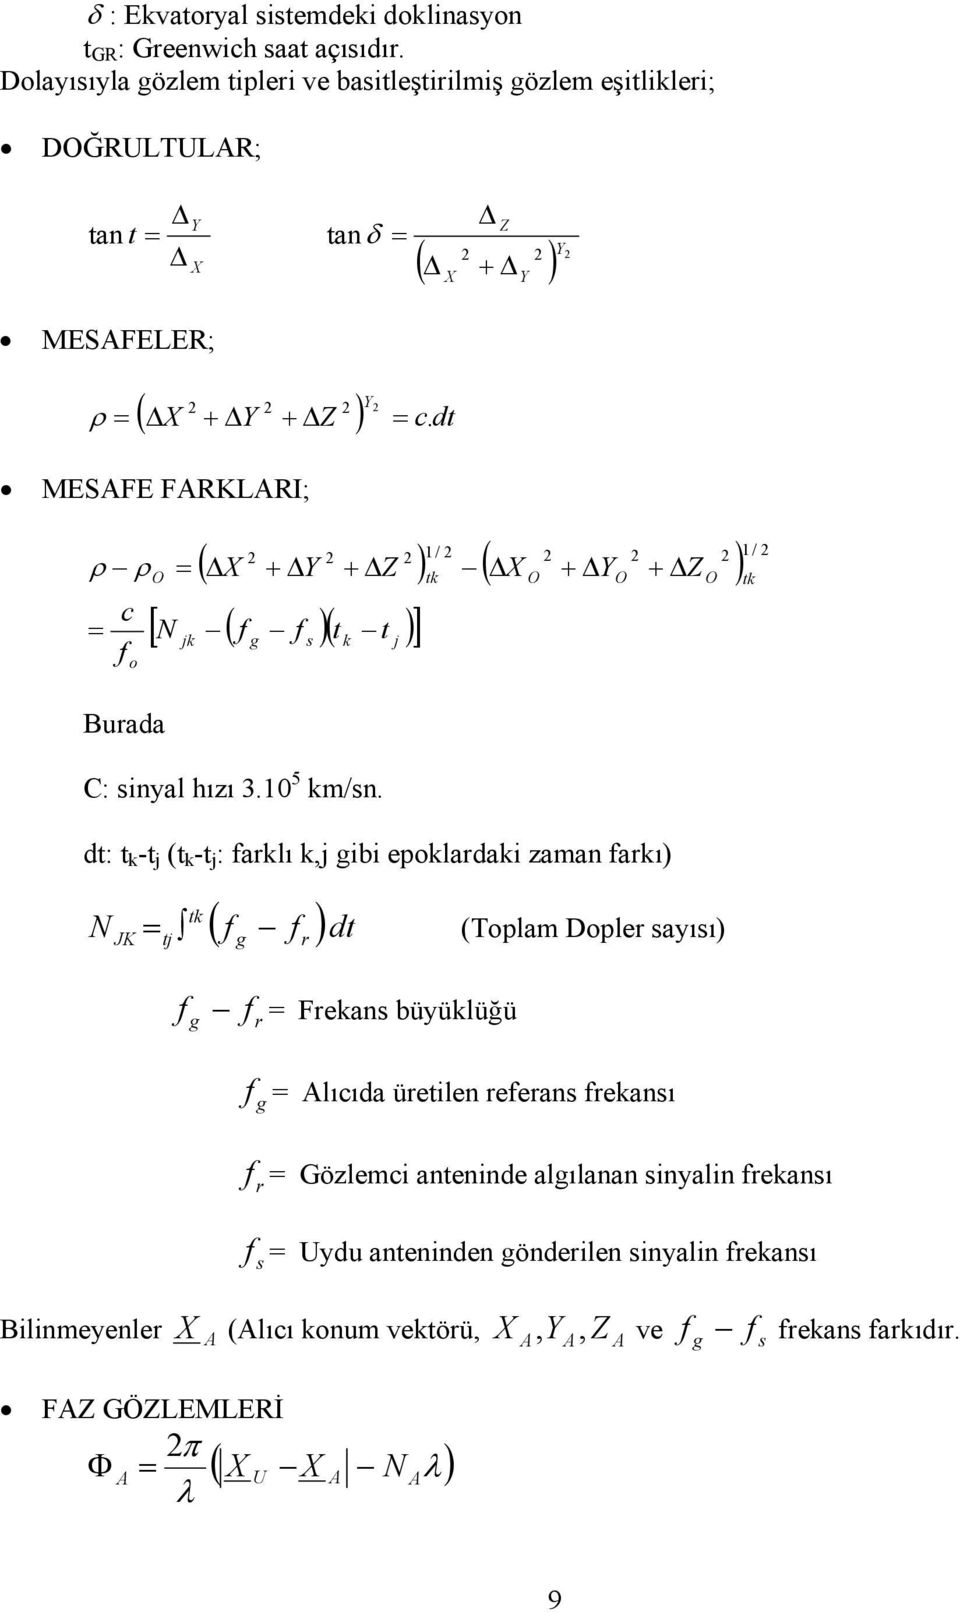 dt MESAFE FARKLARI; ρ ρ = c f o Buada O = ( ΔX + ΔY + ΔZ ) / tk ( ΔX O + ΔYO + ΔZ O ) [ N ( f f )( t t )] jk C: sinyal hızı 3. 5 km/sn.